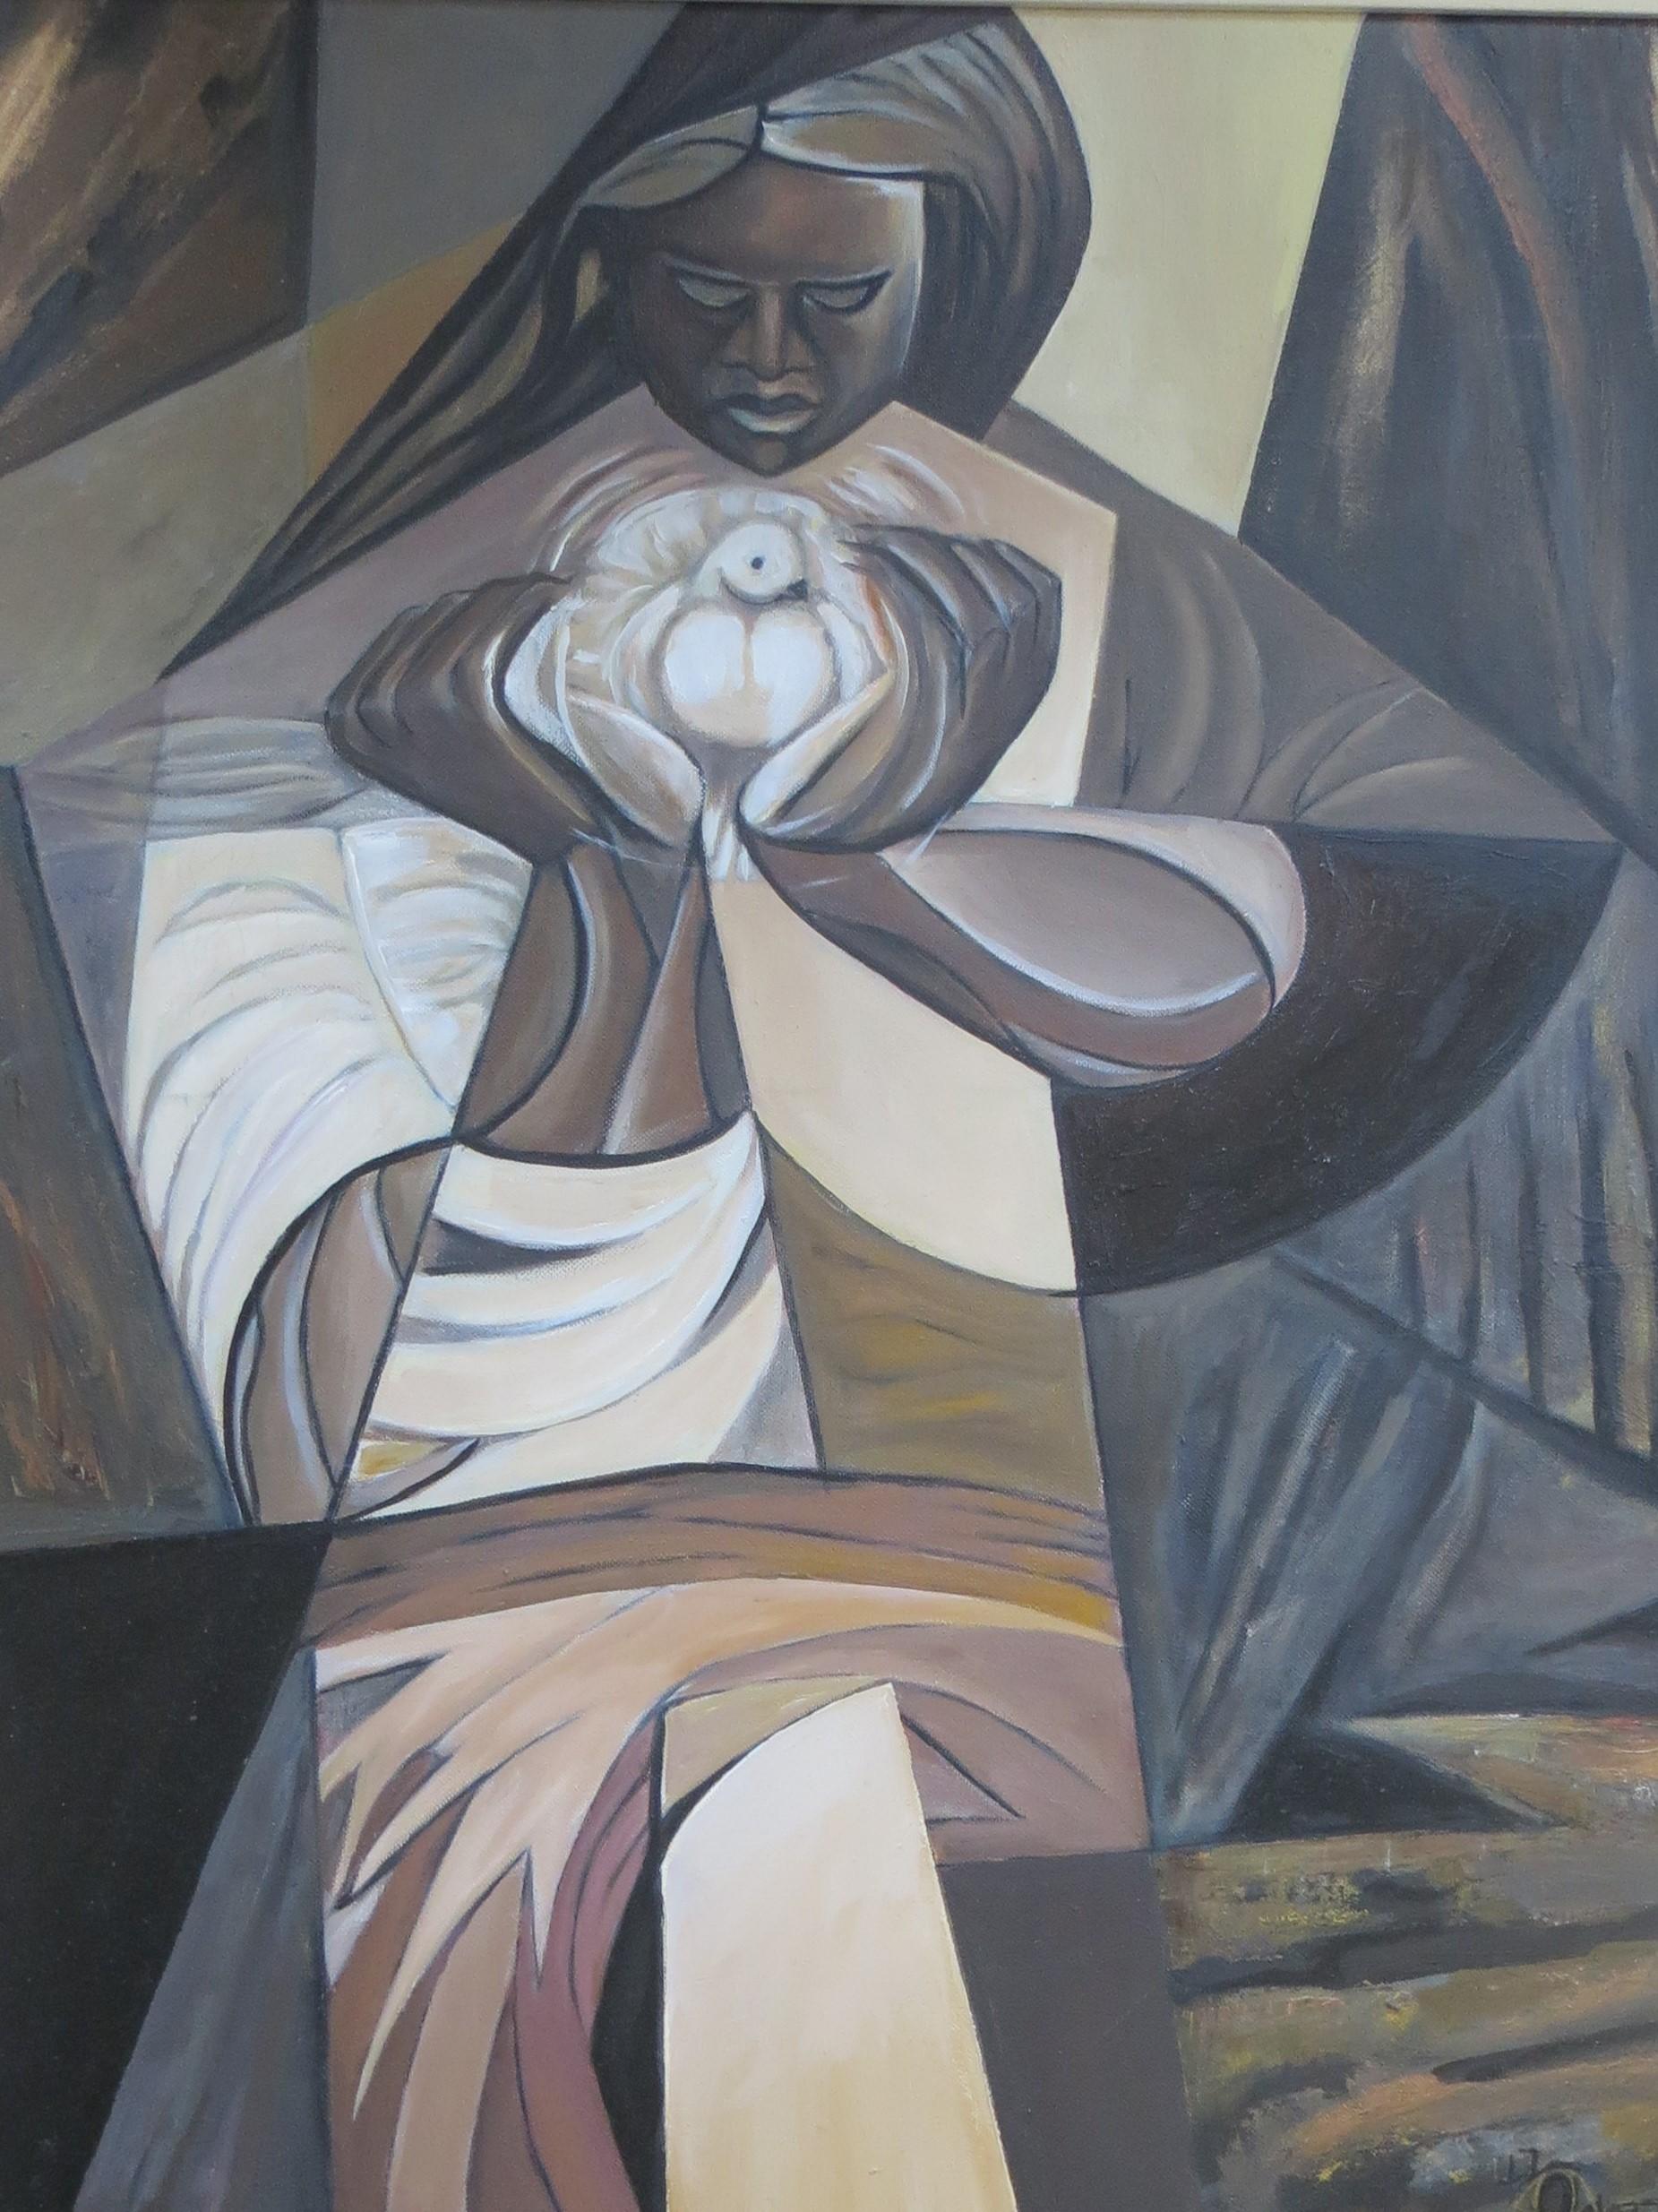 Une belle huile sur toile représentant une Vierge noire avec un pigeon, symbole de pureté.
Dans un style cubiste, cette nature morte est riche en couleurs sombres avec une large touche moderniste.

La peinture est signée (illisible) et datée de